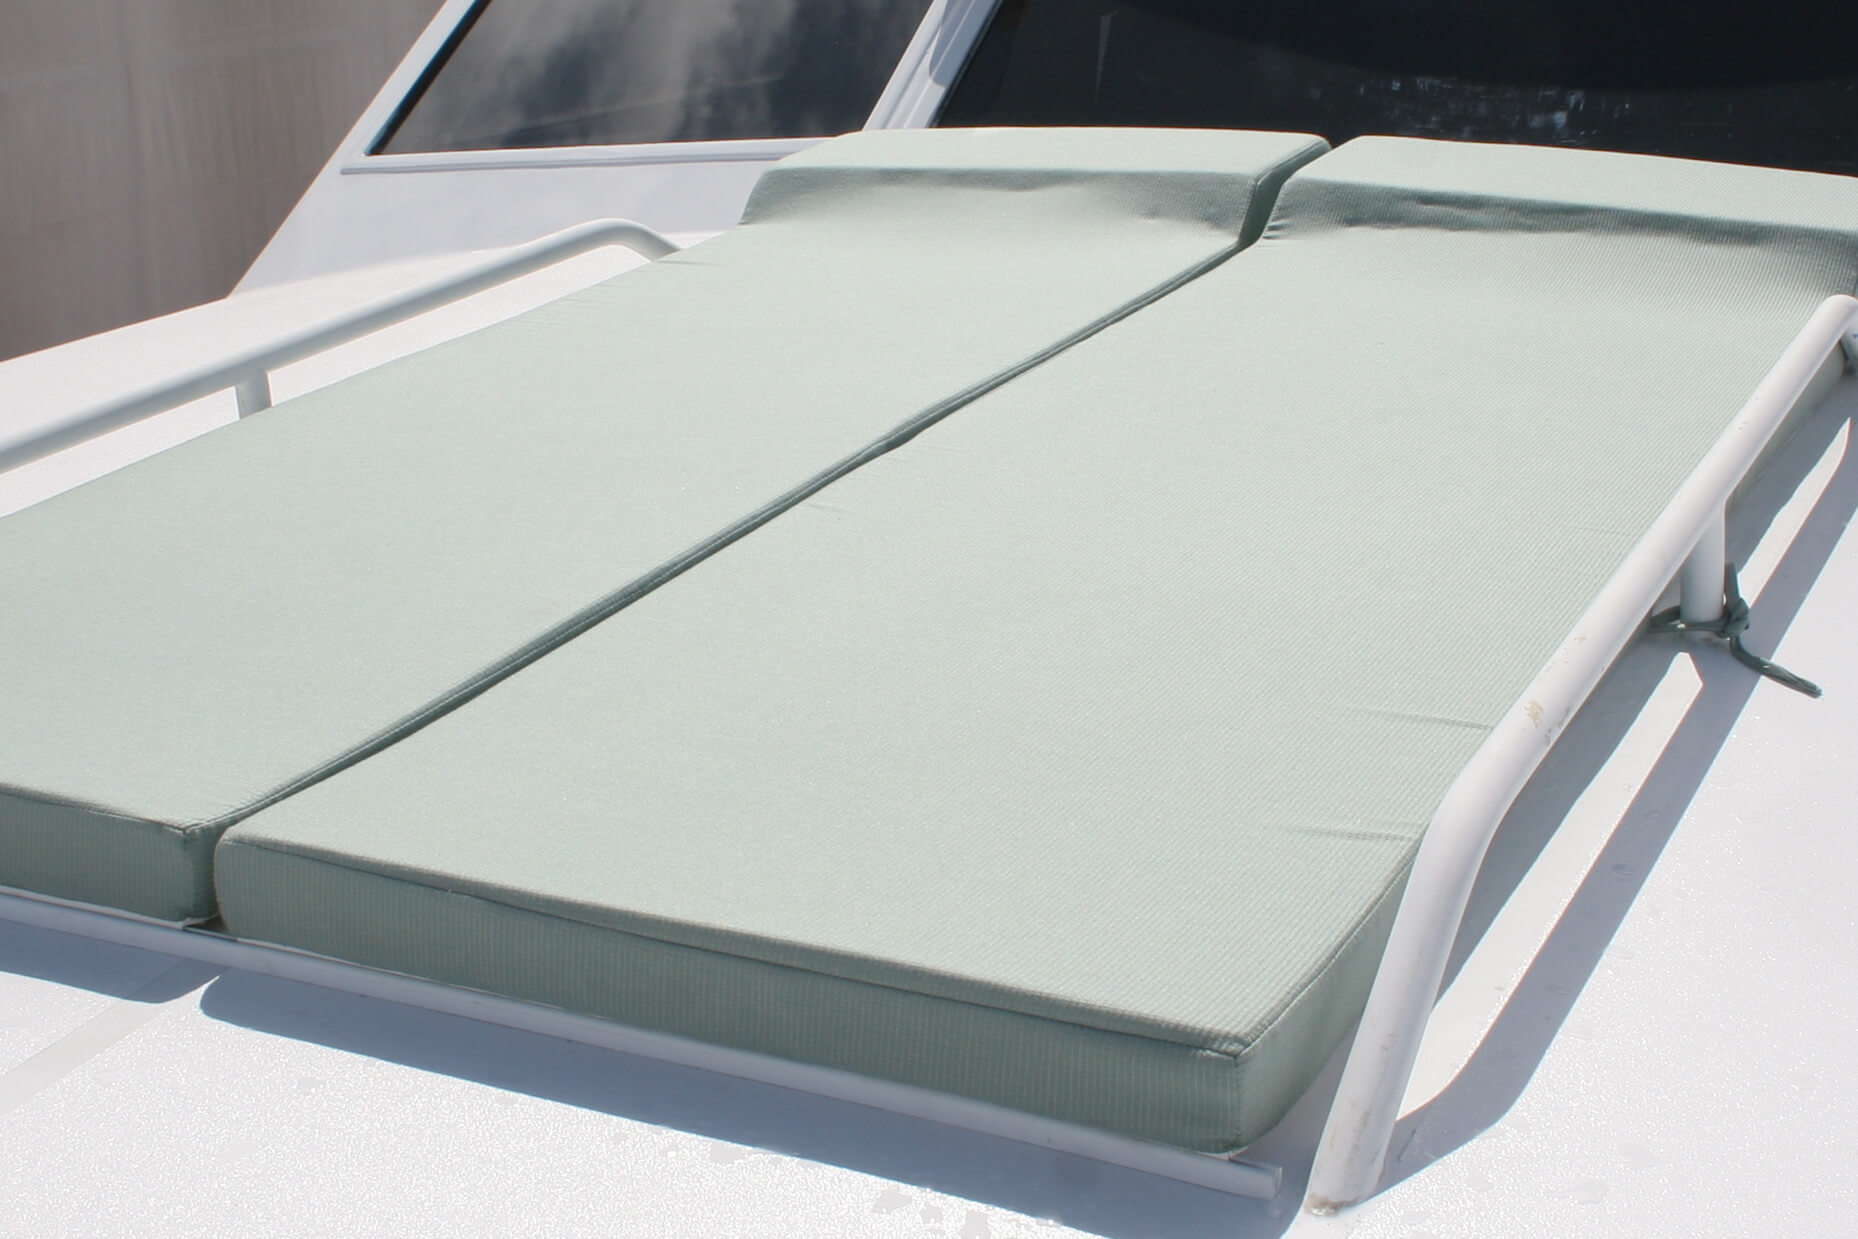 Materace wypoczynkowe pokryte tkaninami Sunbrella oferują wygodny wypoczynek na słońcu na pokładzie